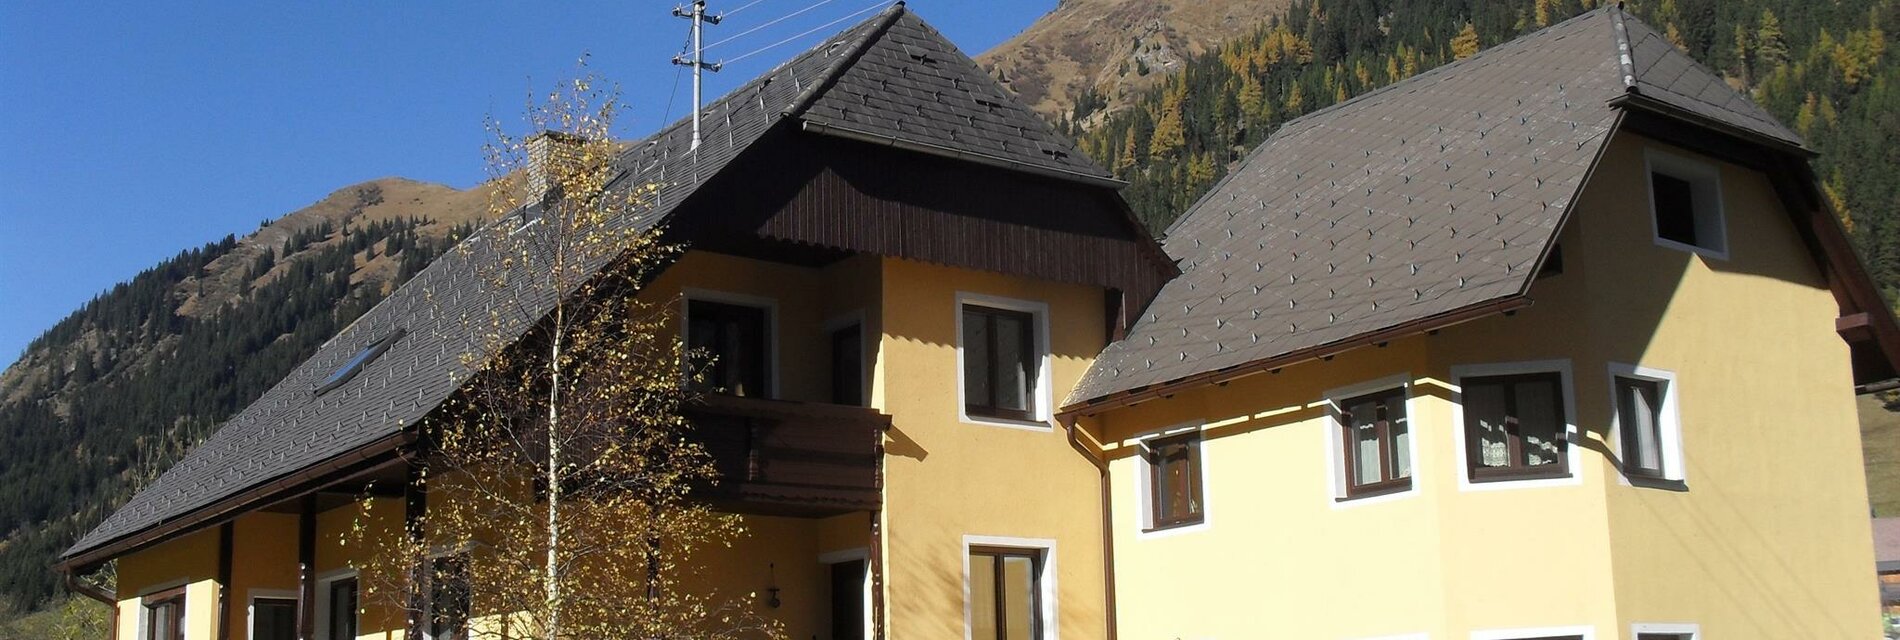 FEWO Danglmaier-Außenansicht-Murtal-Steiermark